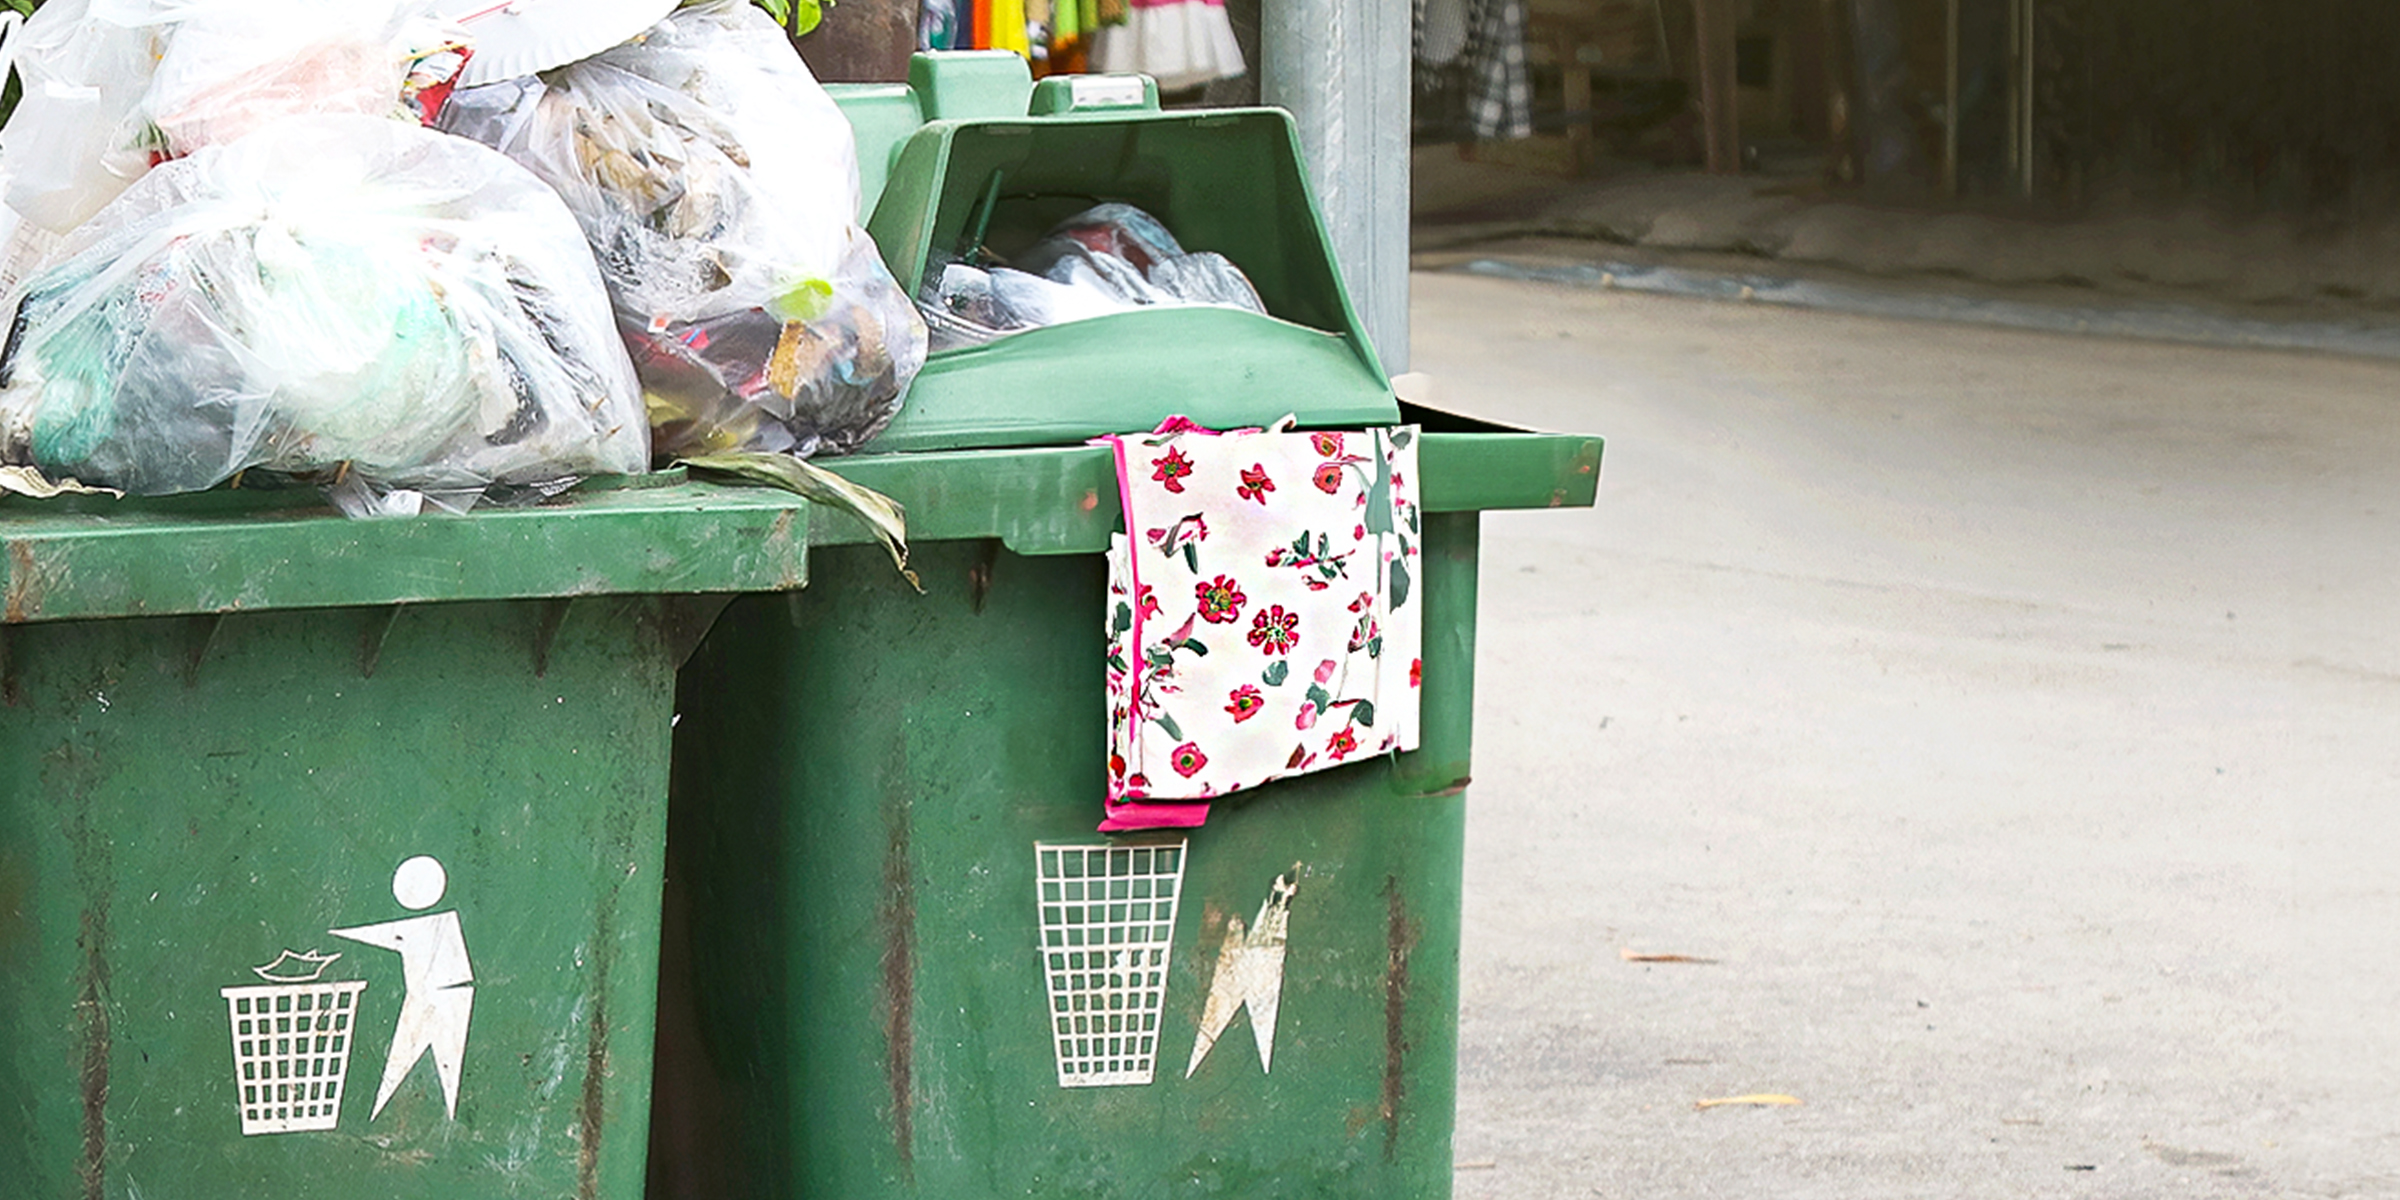 Un delantal floral en un cubo de basura | Fuente: Shutterstock